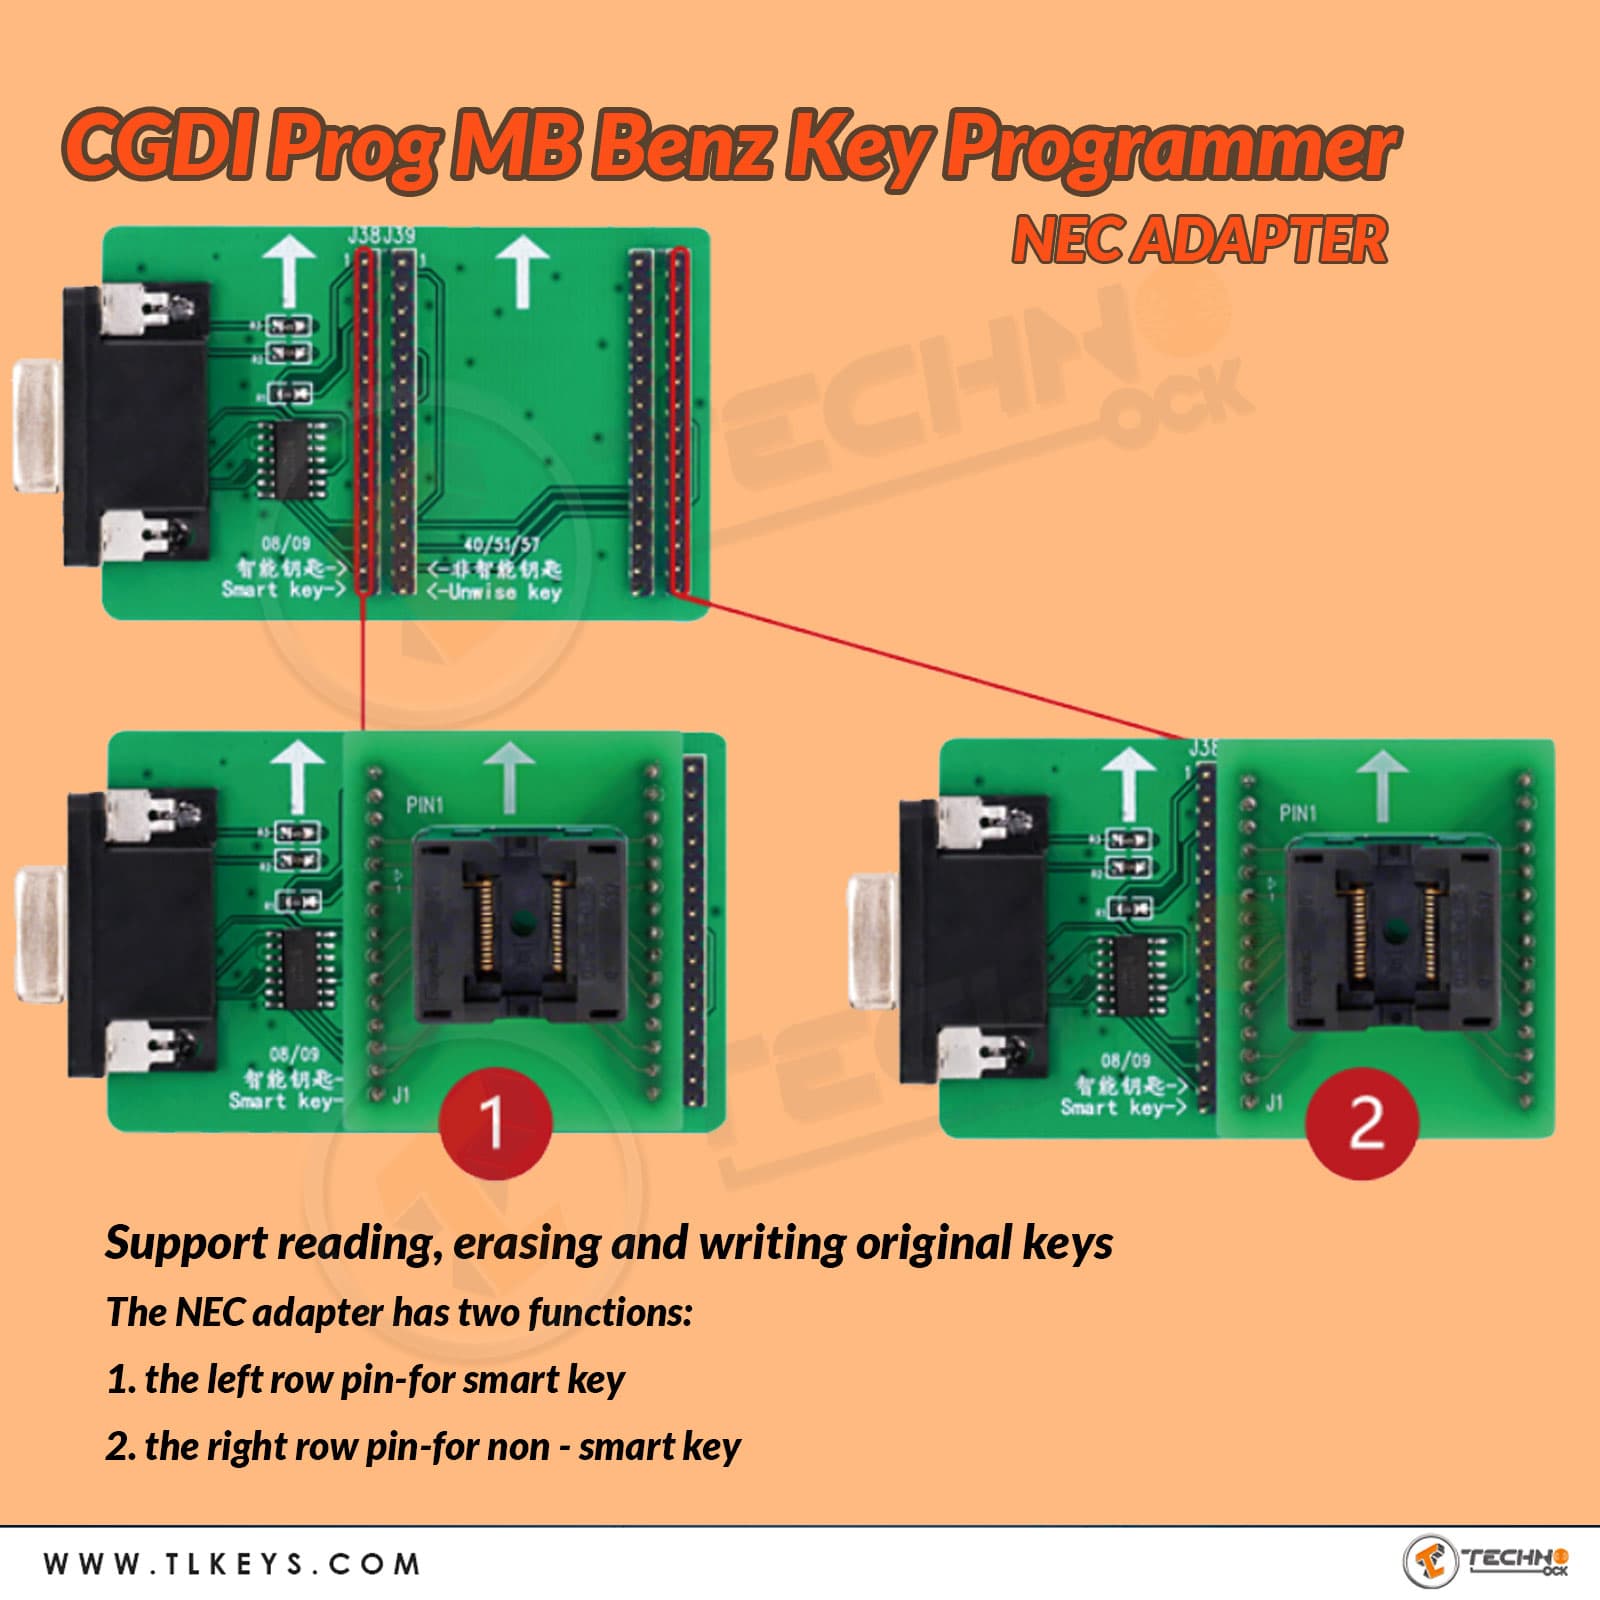 CGDI Prog MB Benz Key Programmer NEC Adapter